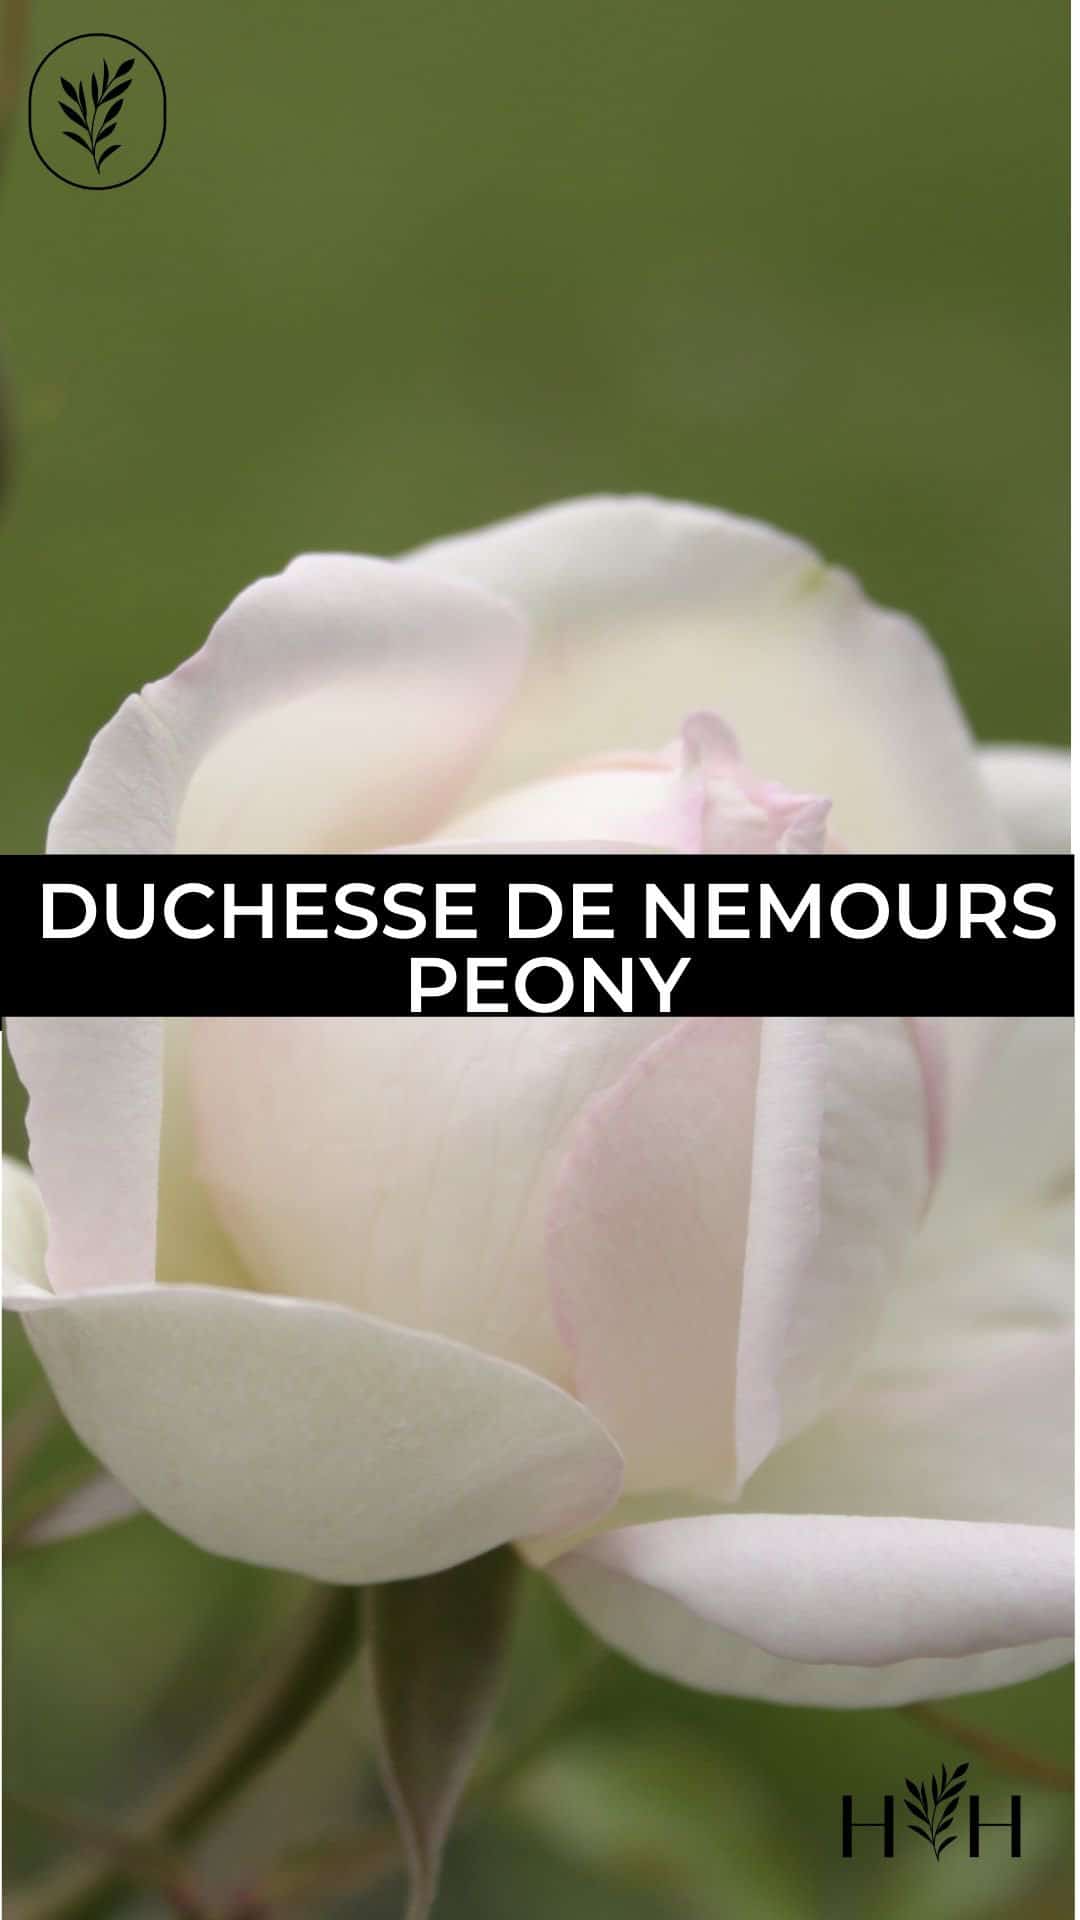 Duchesse de nemours peony via @home4theharvest